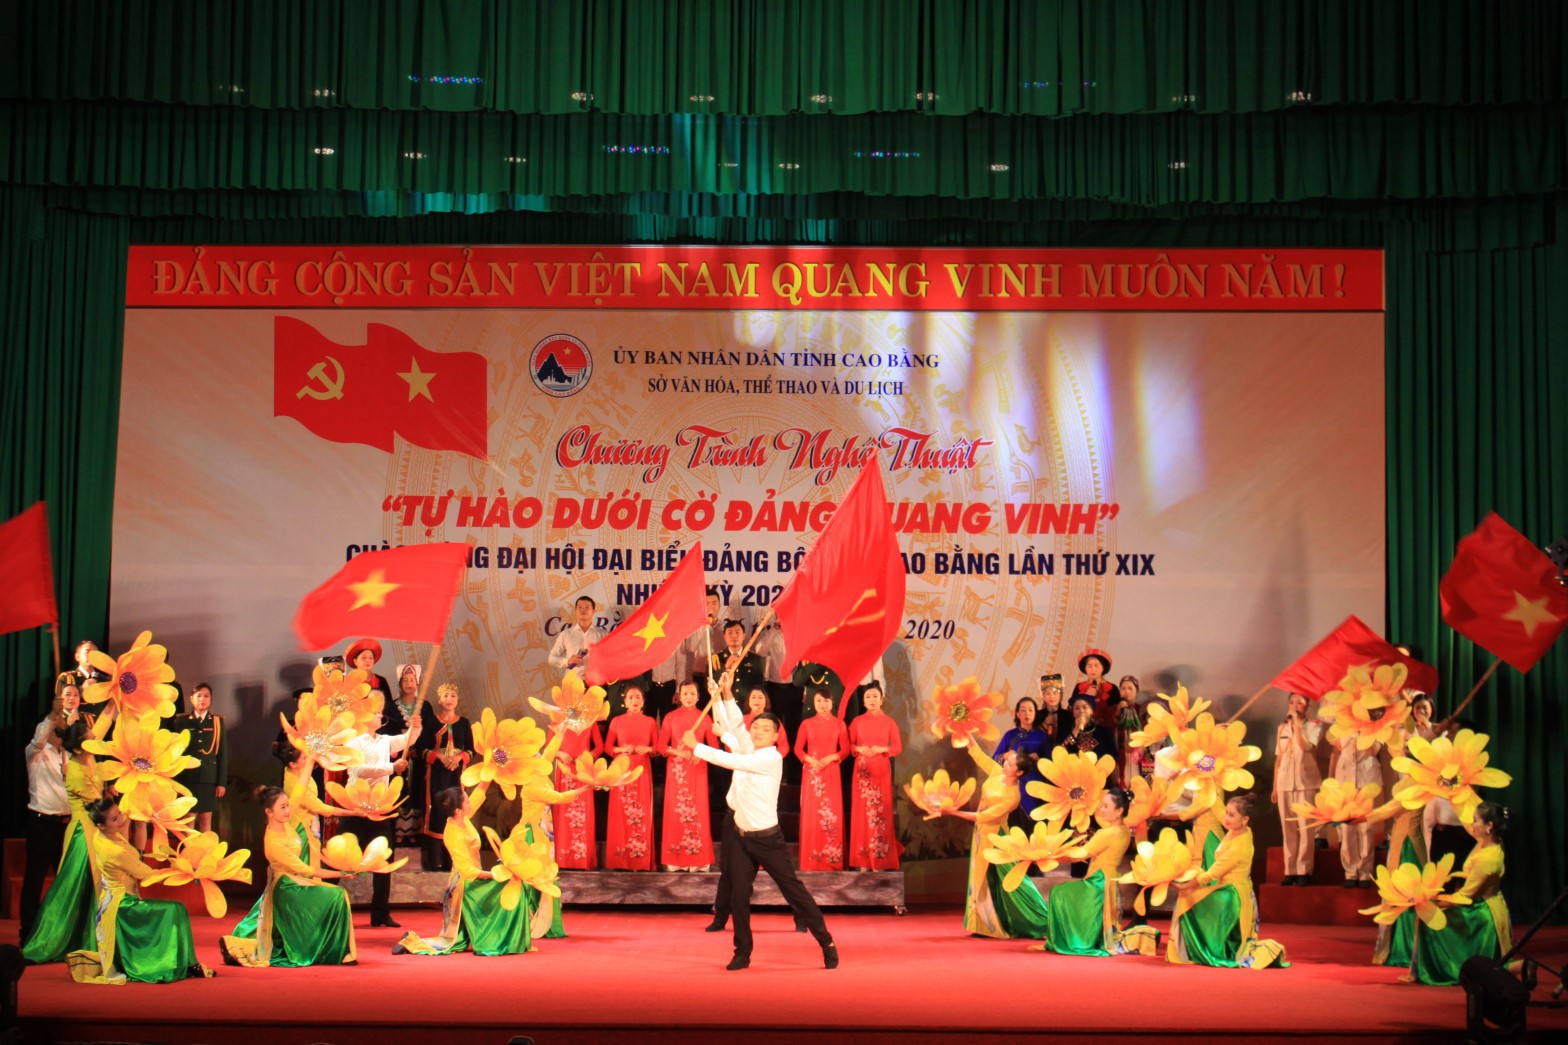 Chương trình nghệ thuật chào mừng Đại hội đại biểu Đảng bộ tỉnh Cao Bằng lần thứ XIX, nhiệm kỳ 2020 - 2025.